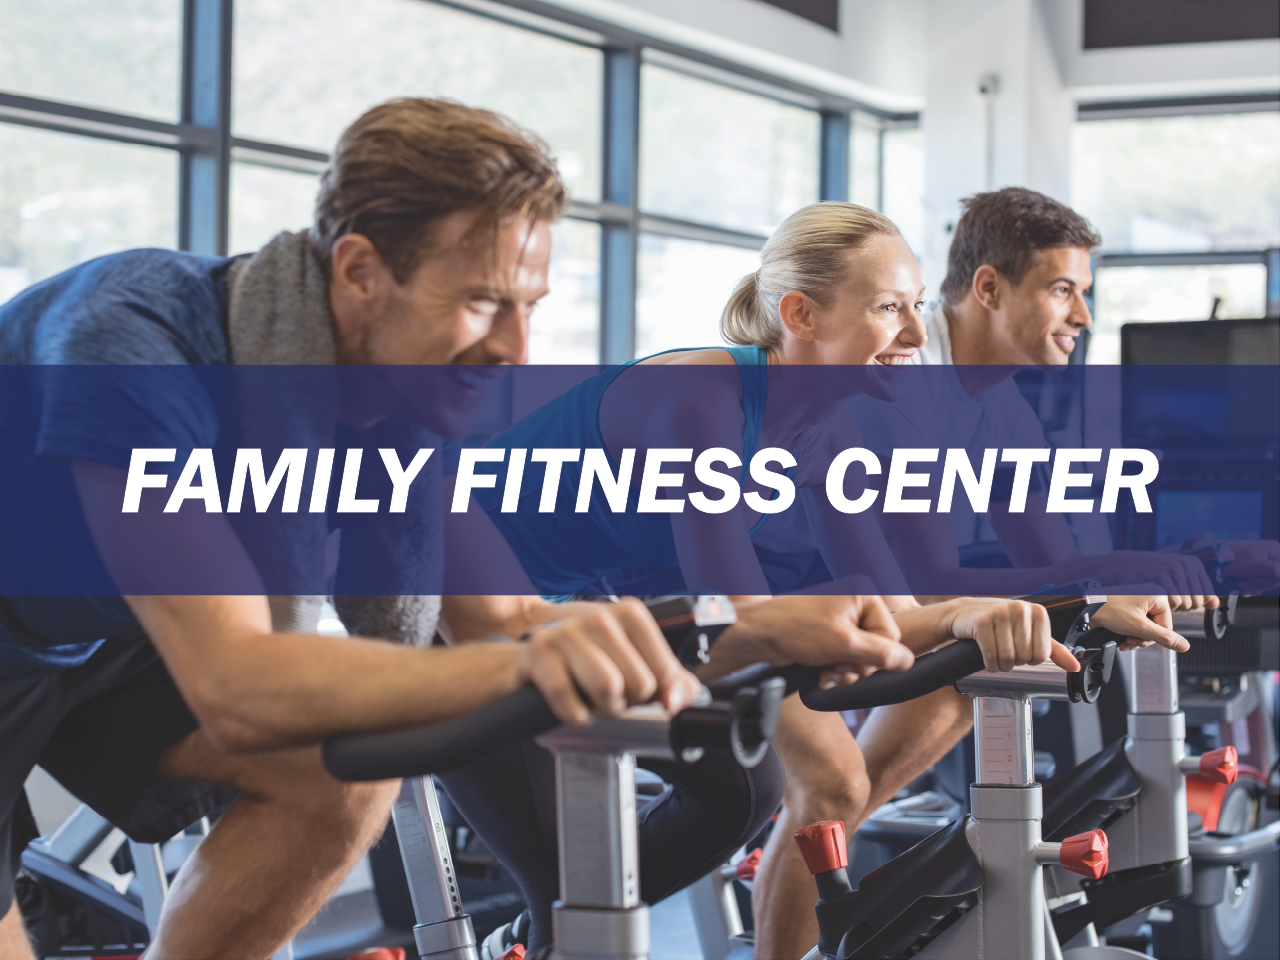 Family Fitness Center Survey